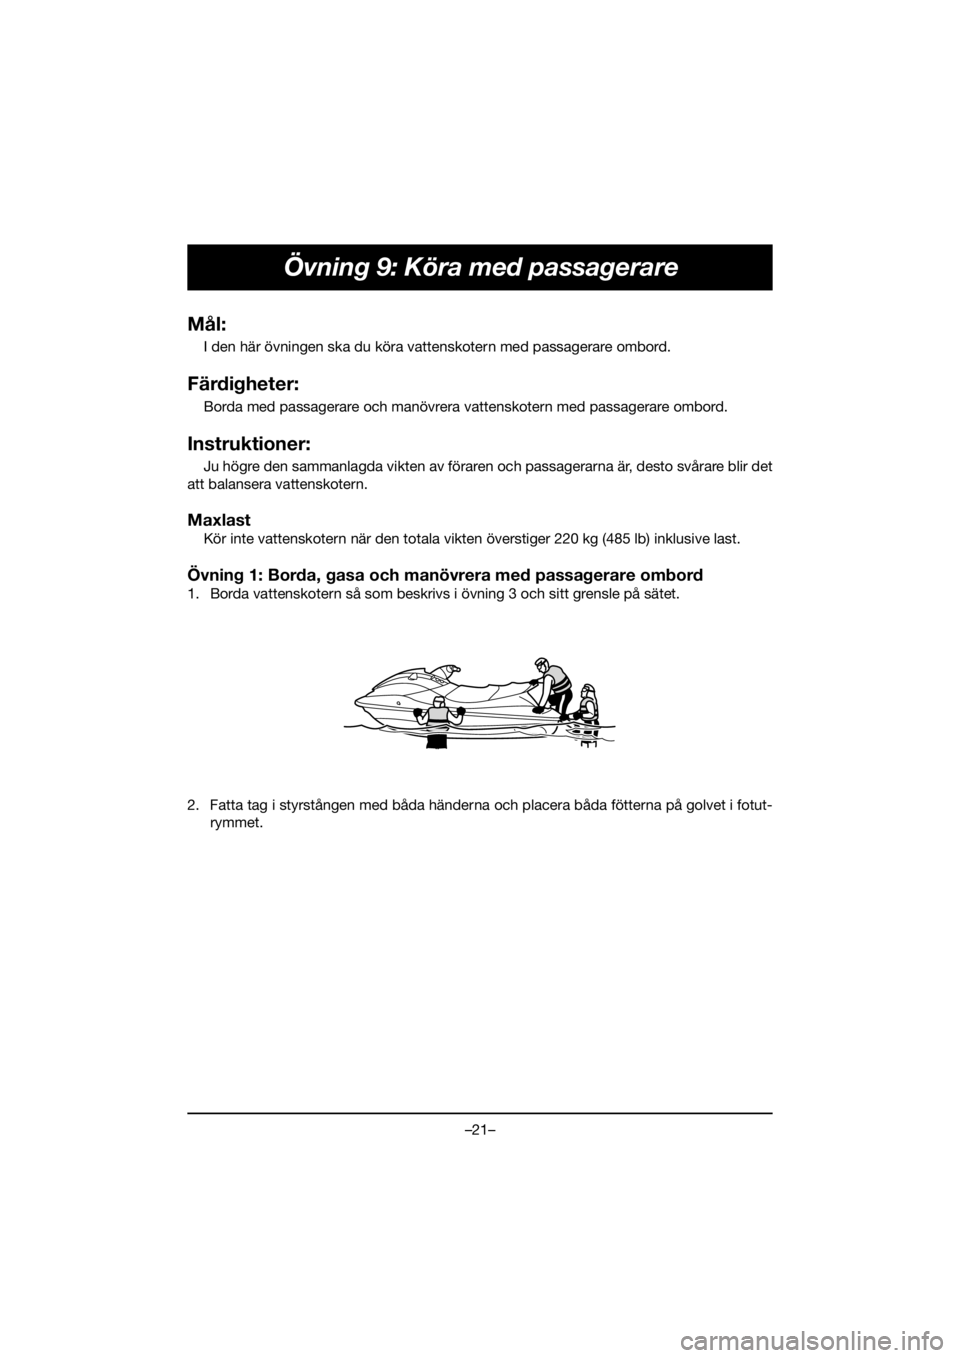 YAMAHA FJR1300 2020  ΟΔΗΓΌΣ ΧΡΉΣΗΣ (in Greek) –21–
Övning 9: Köra med passagerare
Mål:
I den här övningen ska du köra vattenskotern med passagerare ombord.
Färdigheter:
Borda med passagerare och manövrera vattenskotern med passagerare